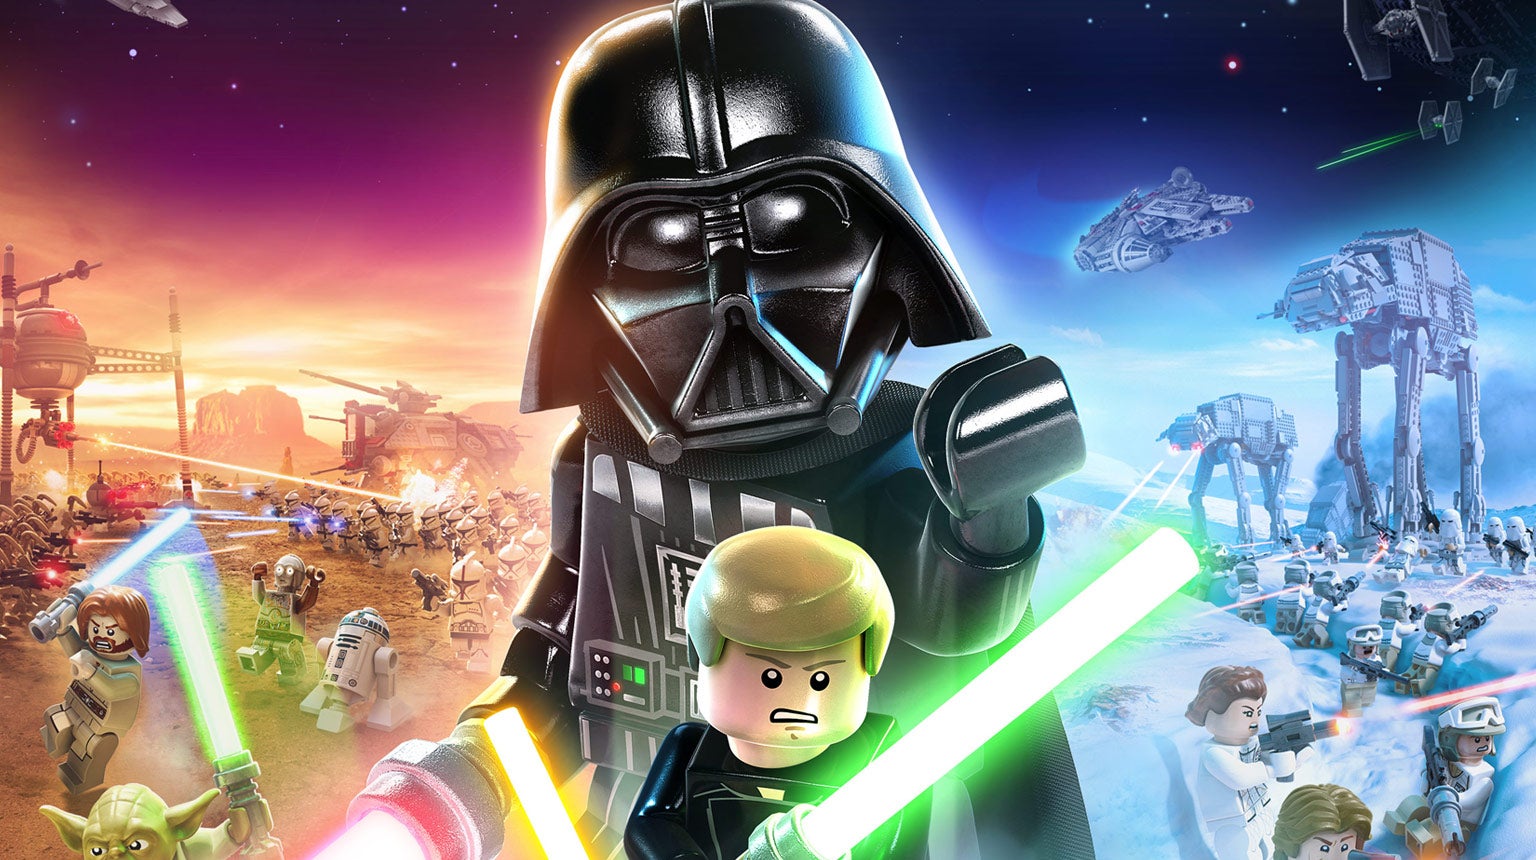 Afbeeldingen van Lego Star Wars: The Skywalker Saga release bekend